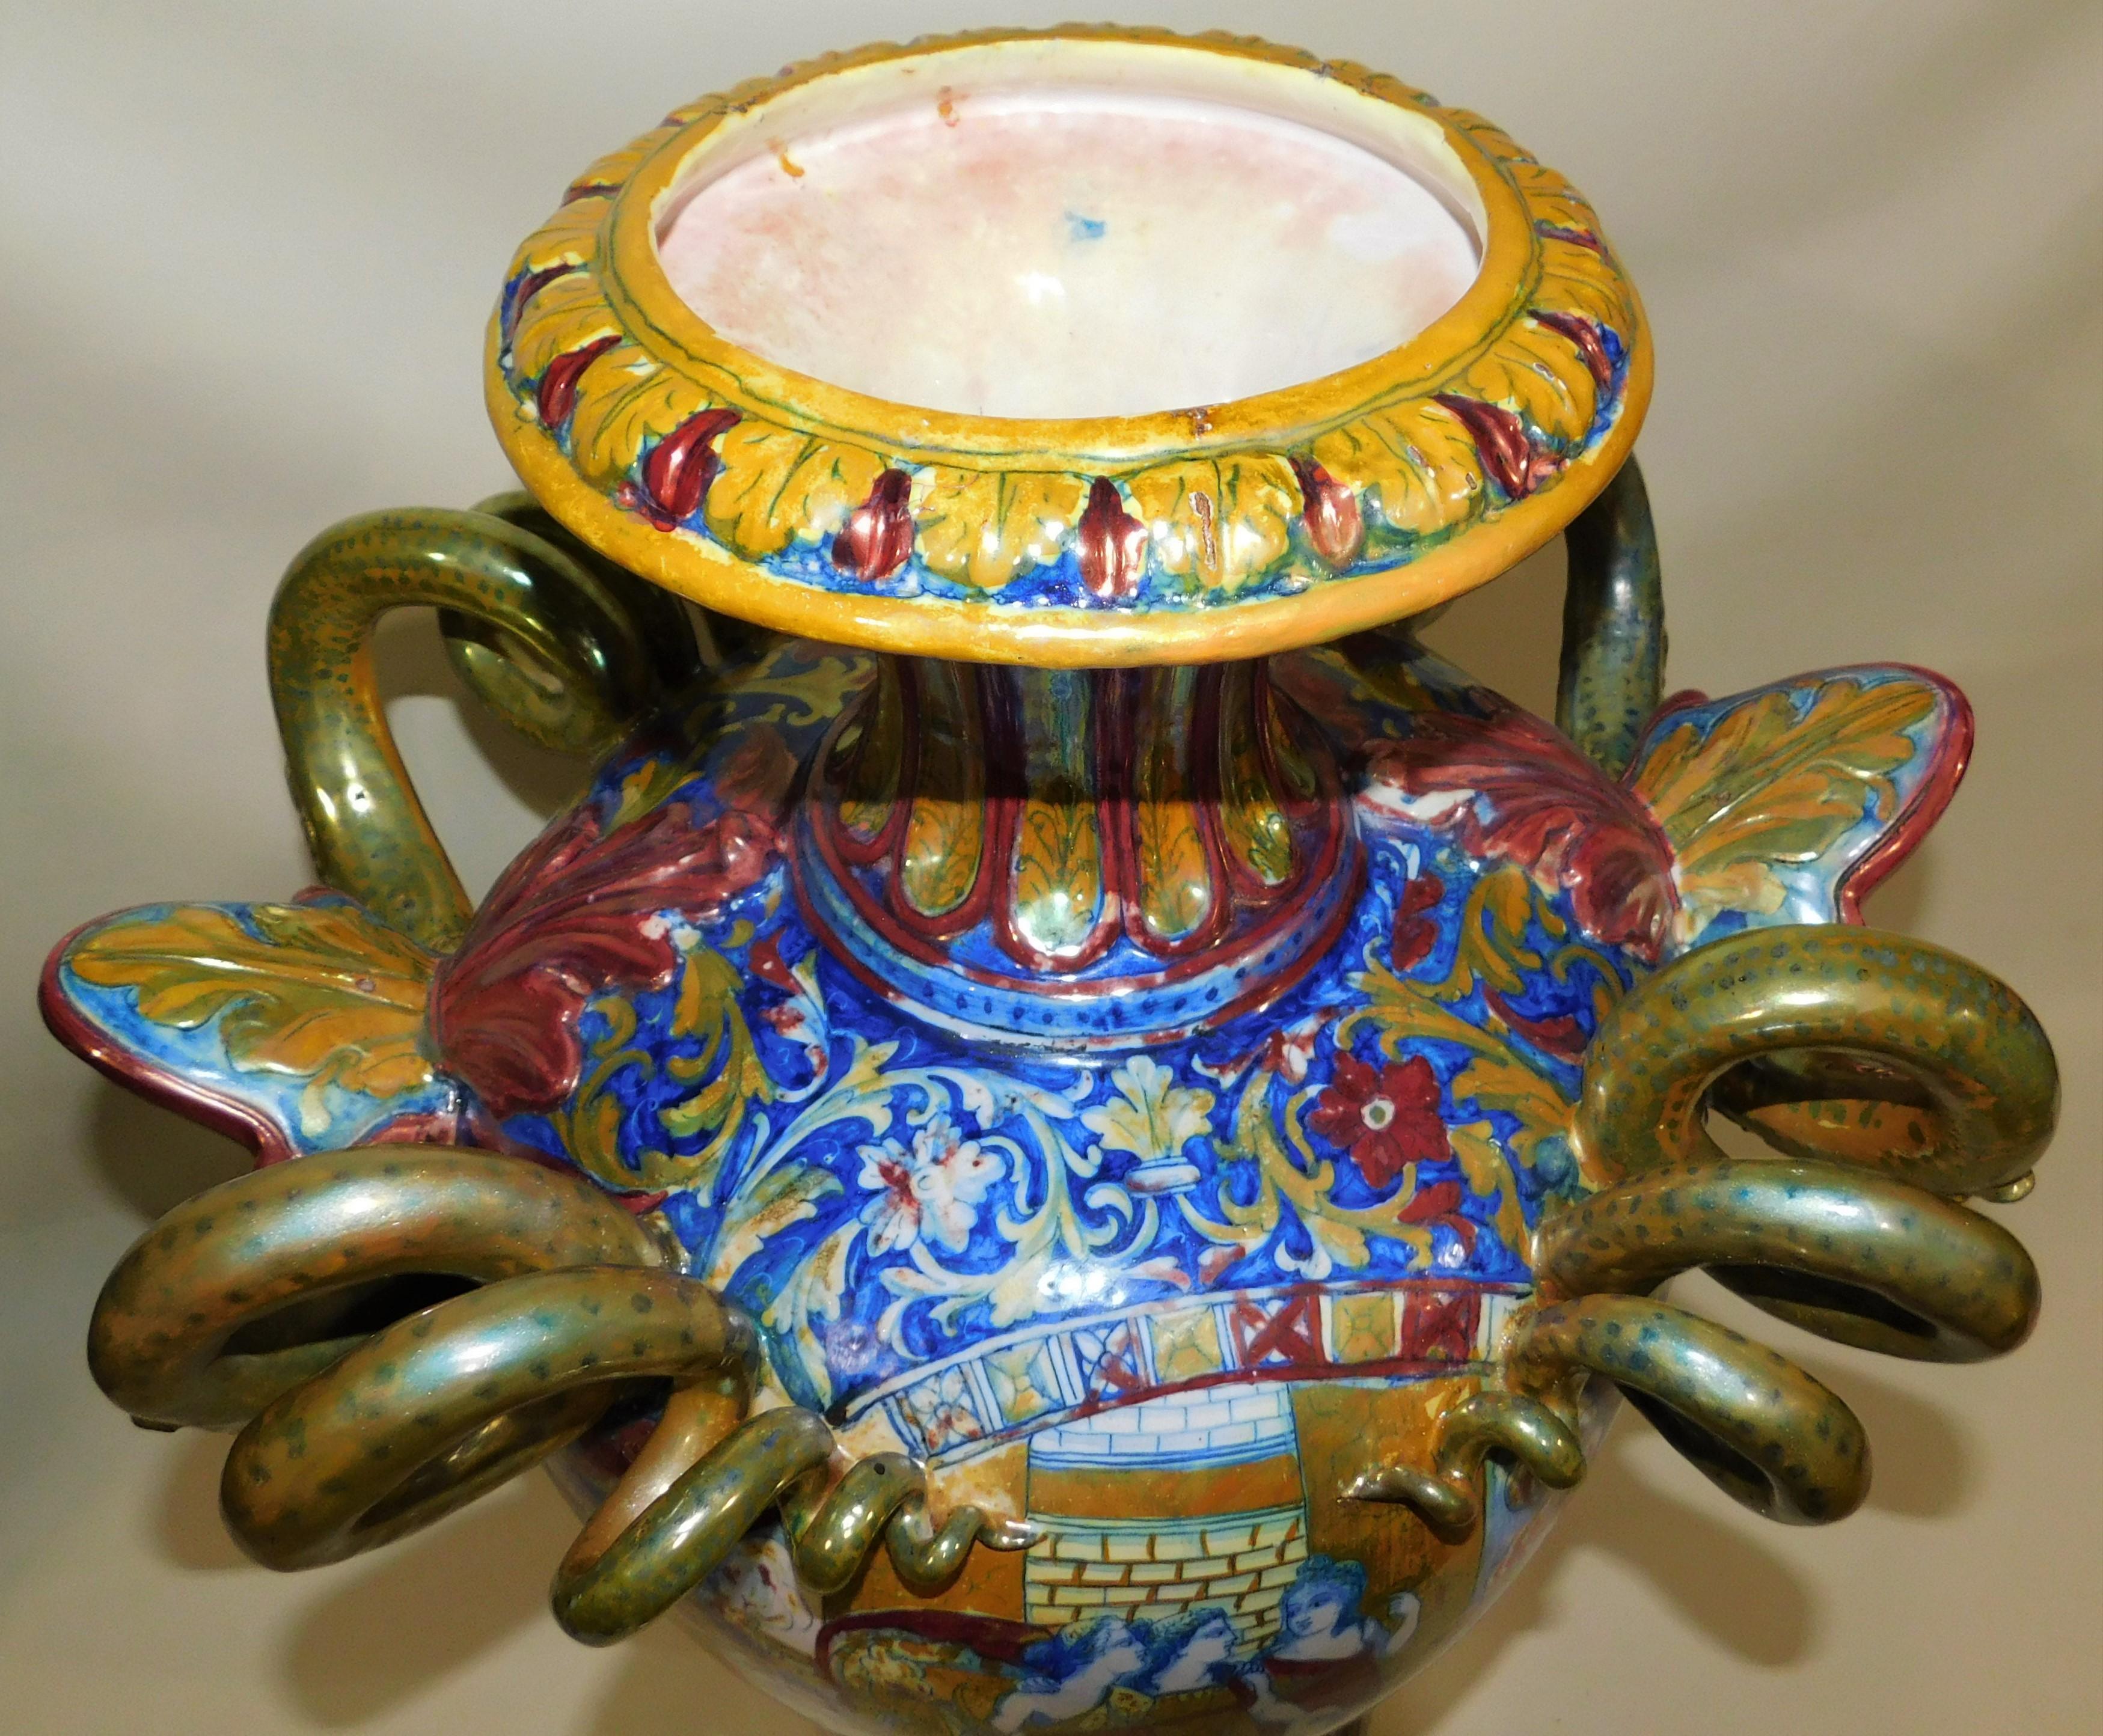 Monumental circa 1890 Italian Majolica Ceramic Urn Shaped Vase For Sale 7